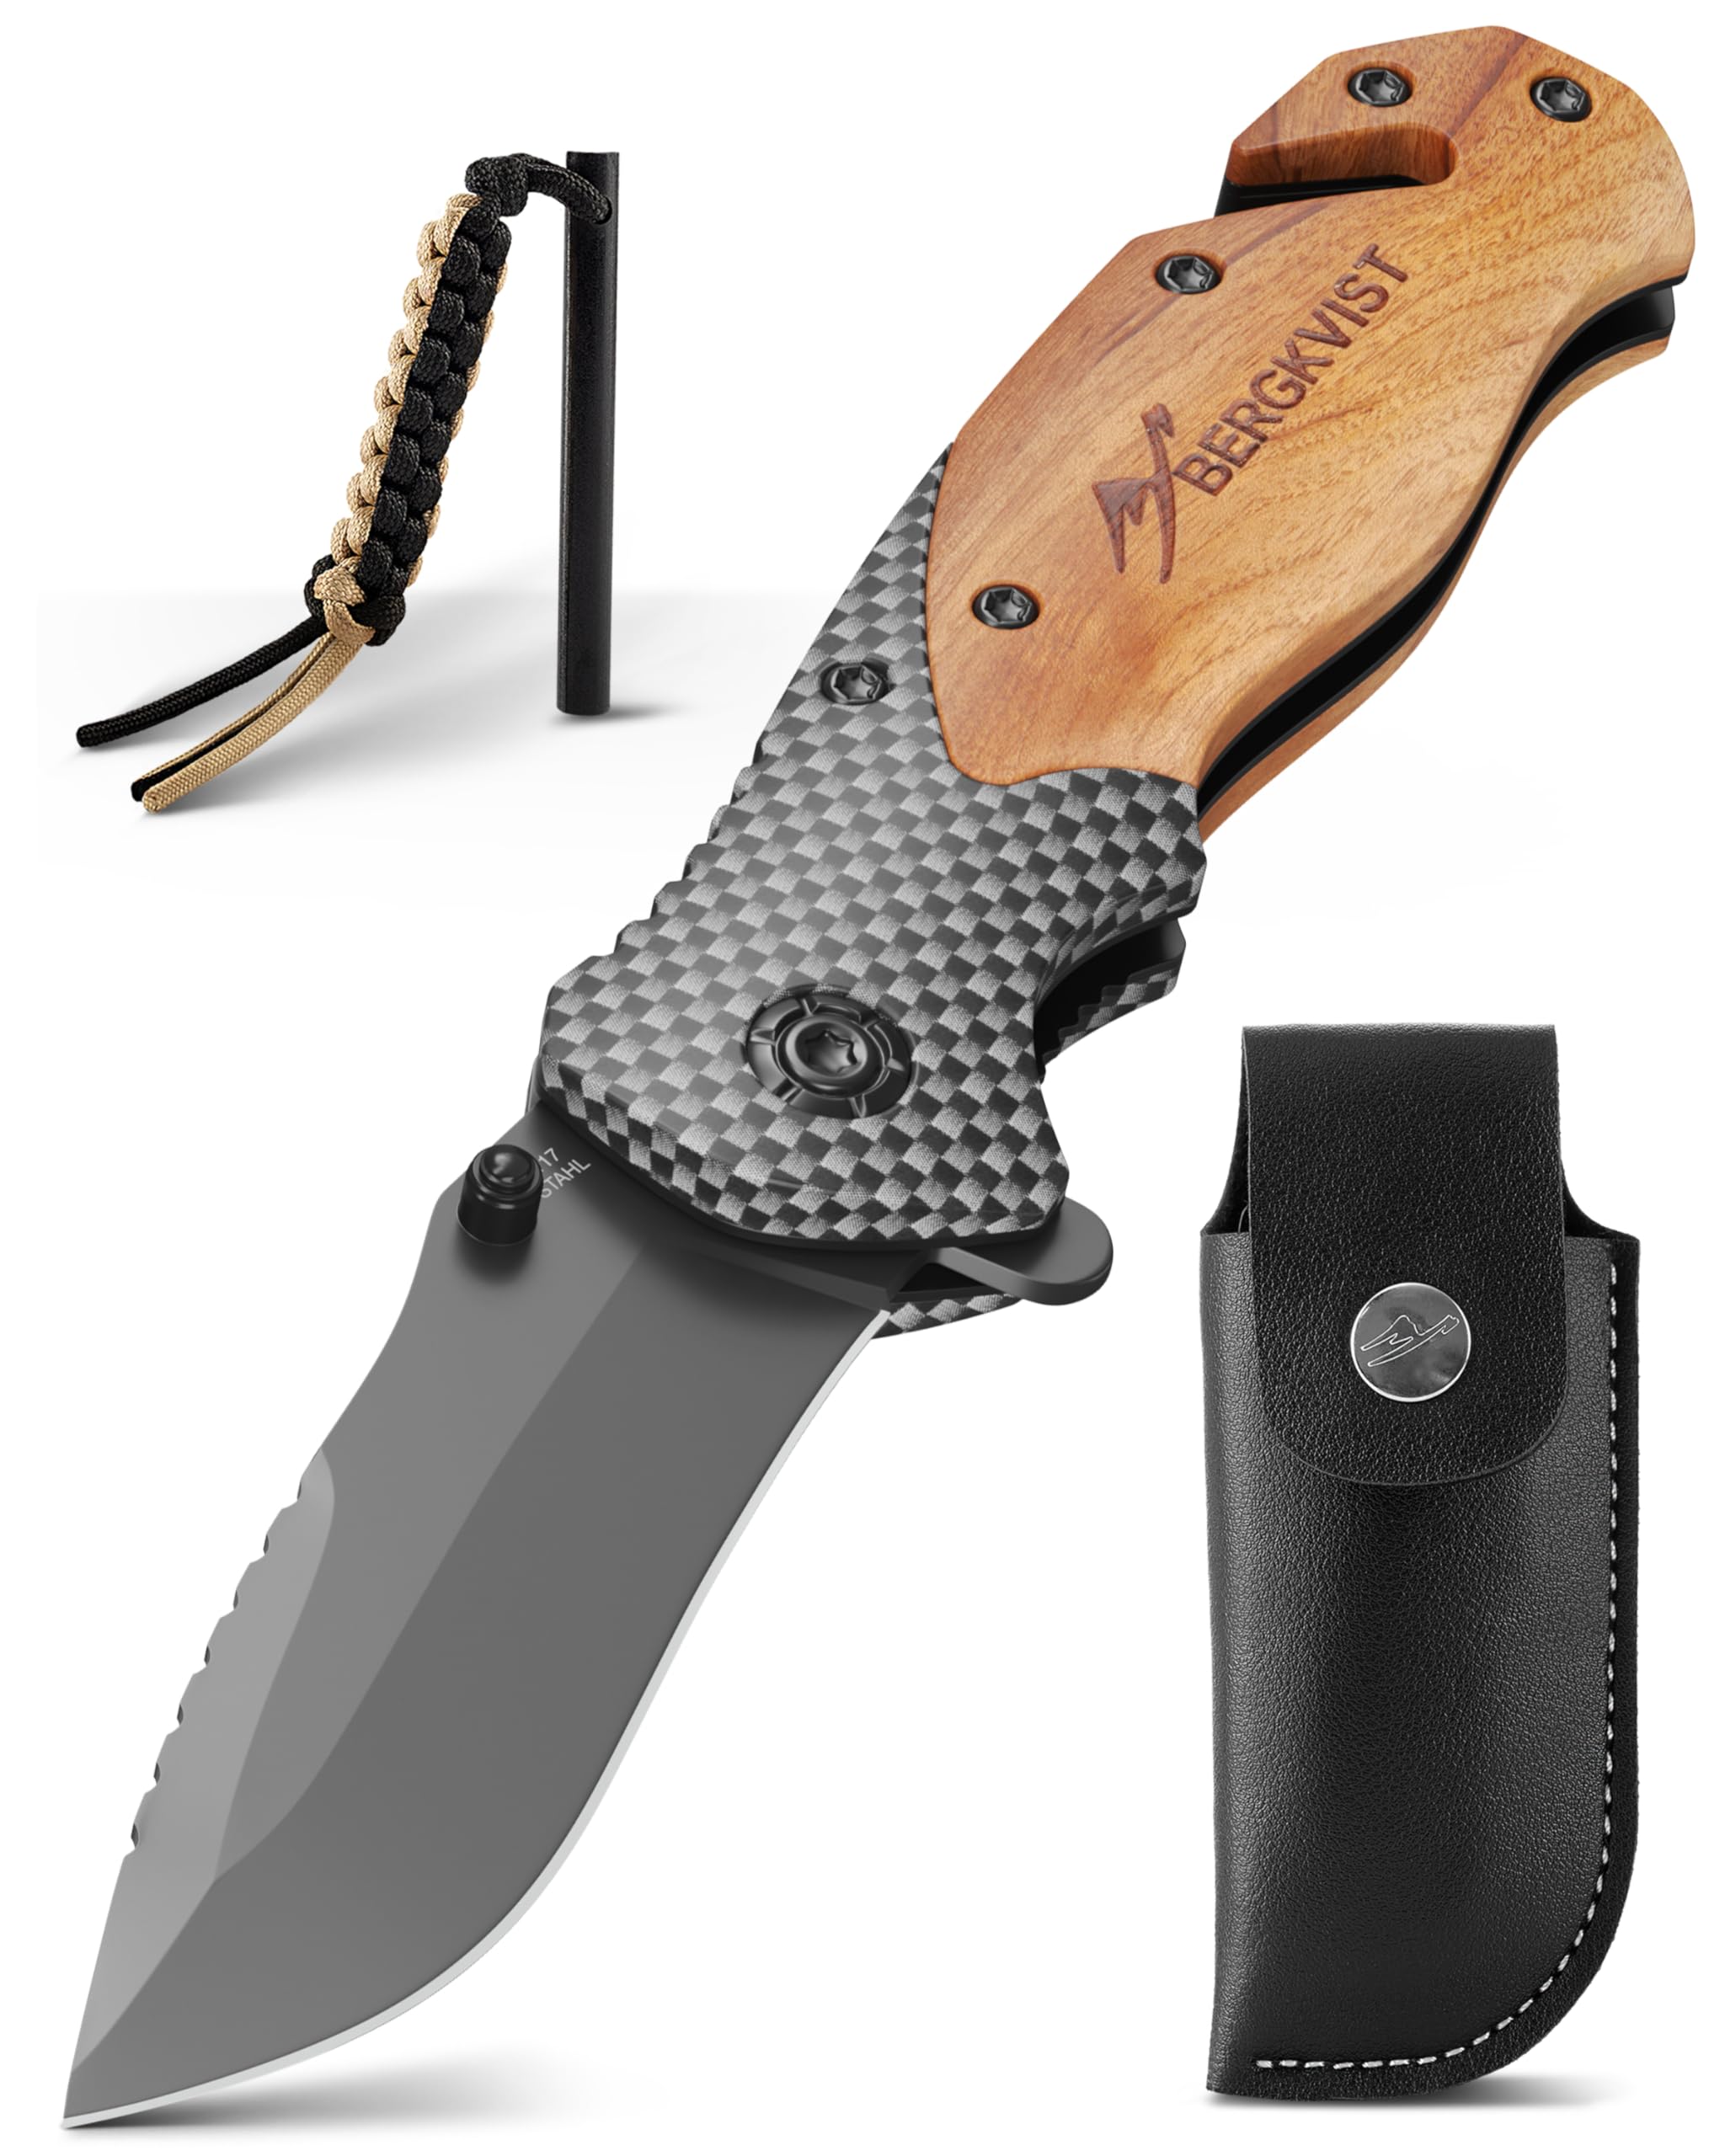 BERGKVIST® K19 Klappmesser (Einhandmesser) mit Holzgriff & Titanium für Outdoor & Survival - 3-in-1 Taschenmesser mit Glasbrecher, Gurtschneider & Feuerstahl